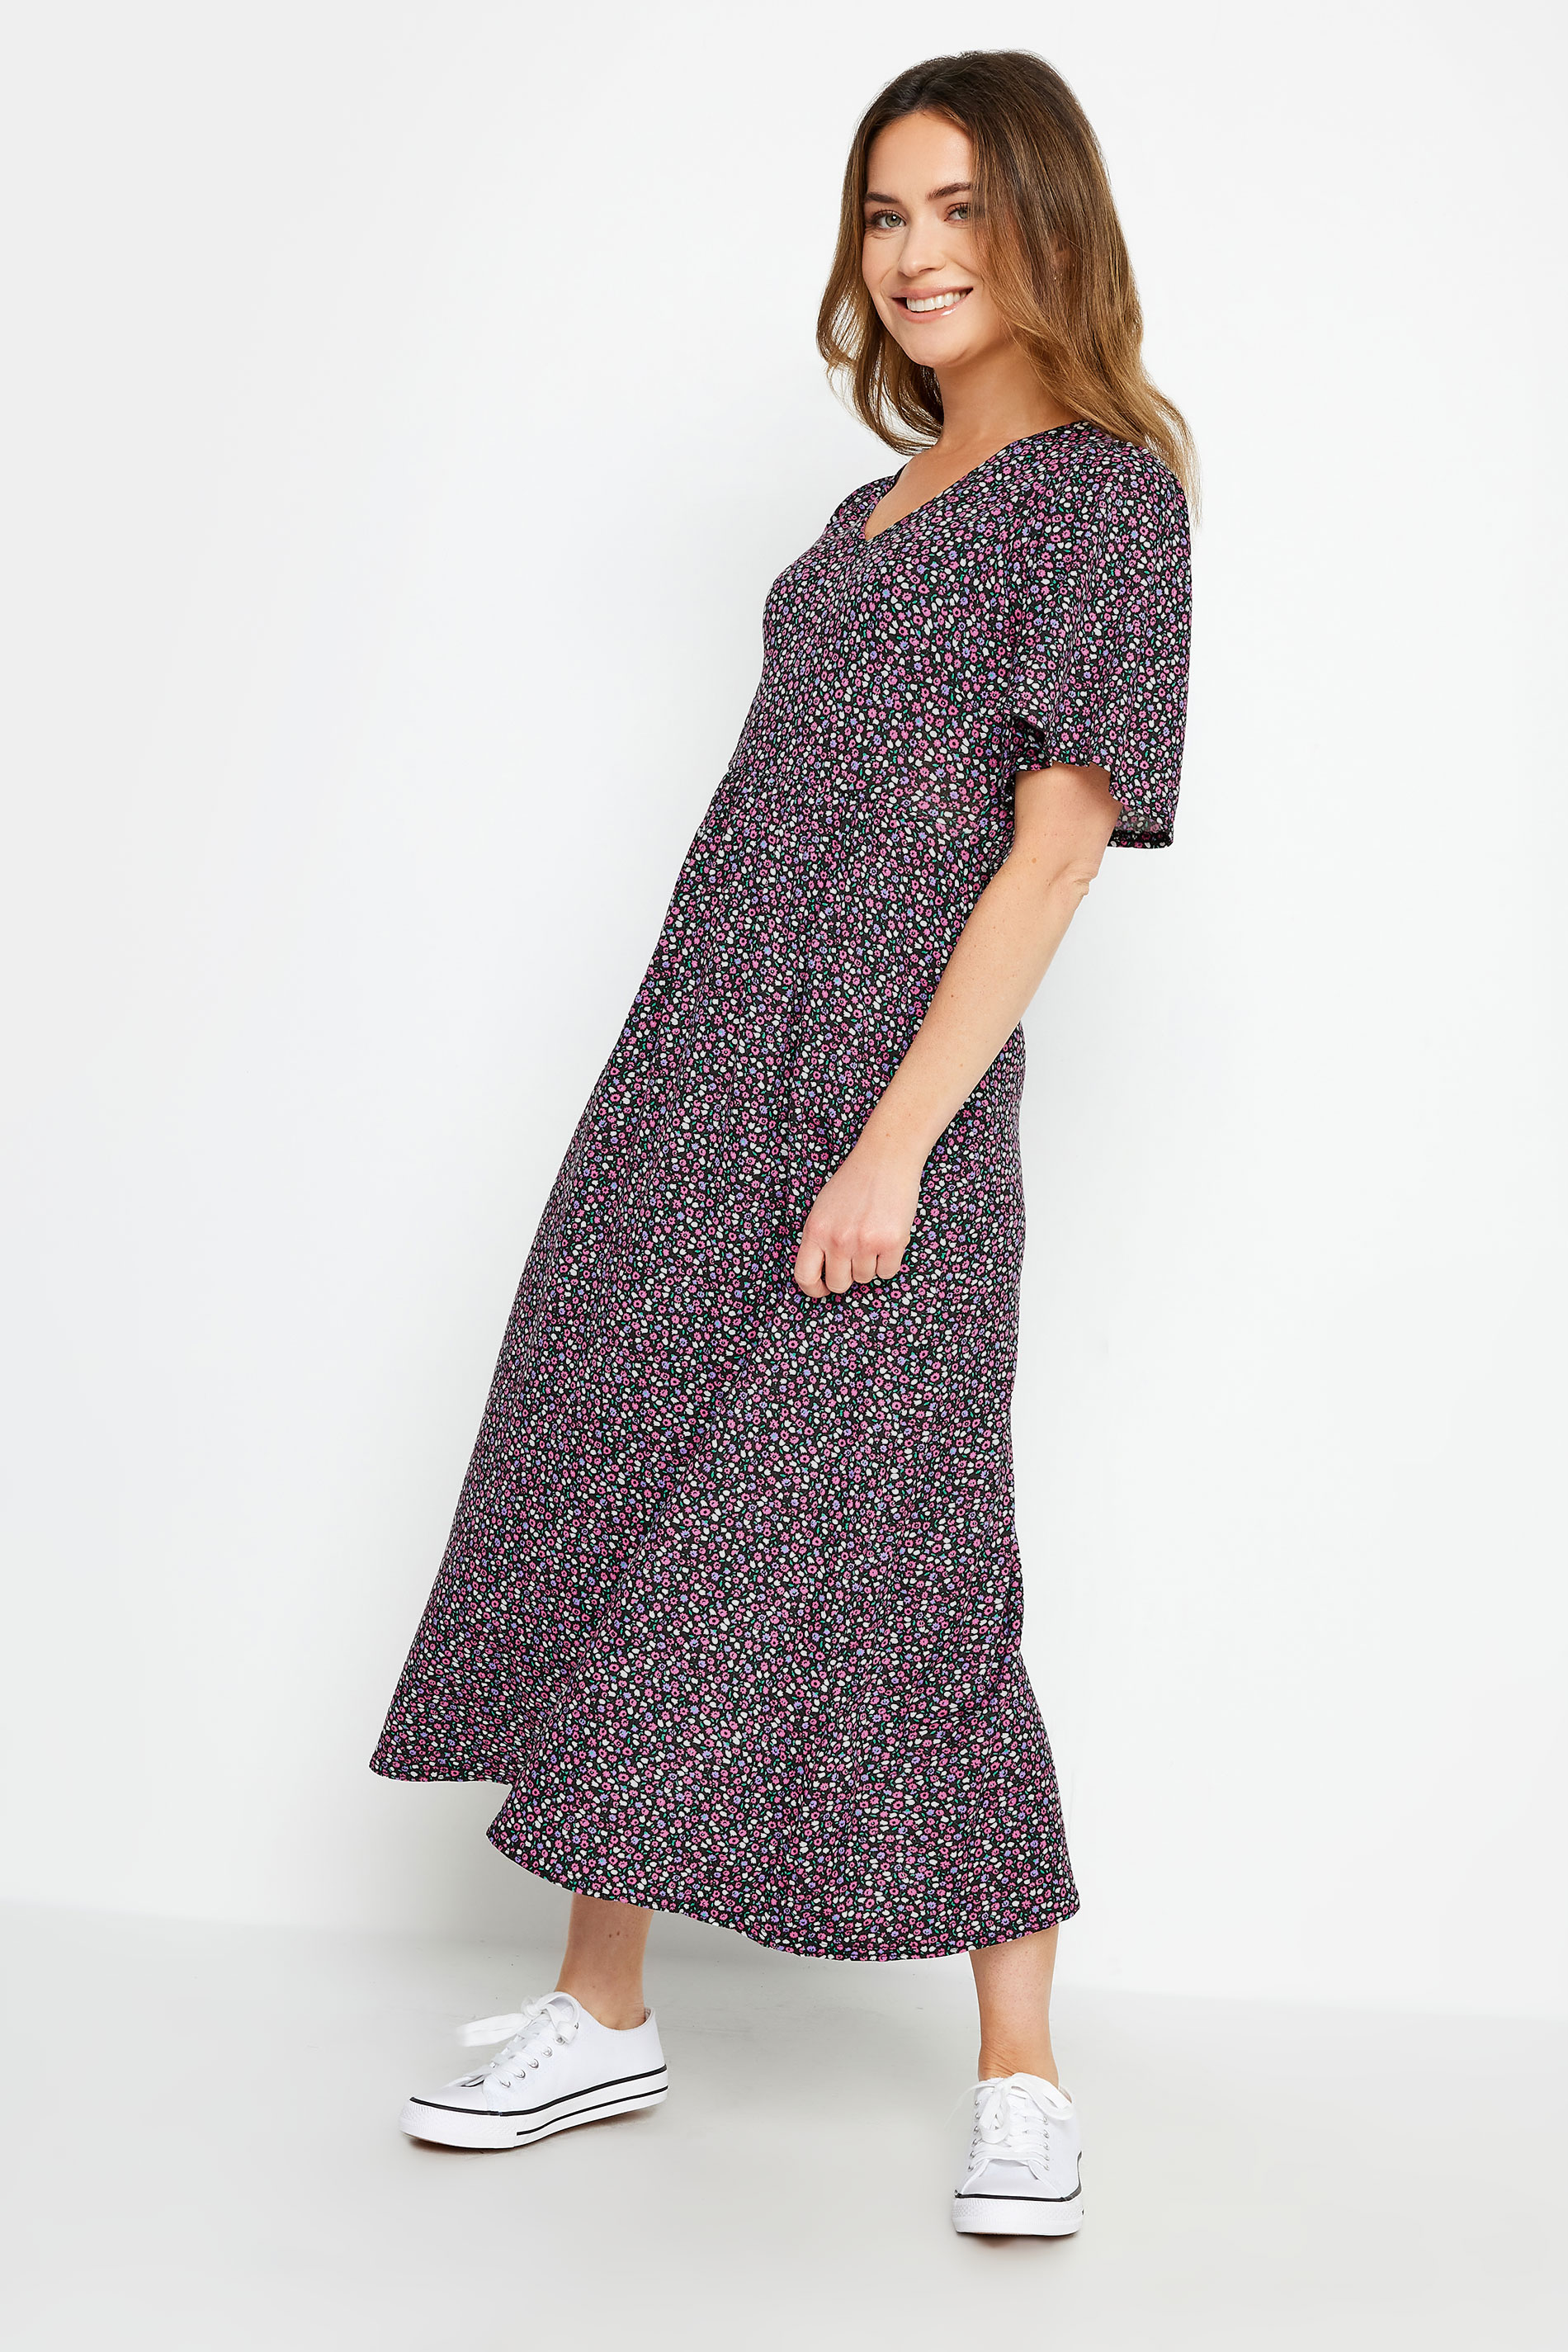 M&Co Petite Purple Ditsy Floral Print Dress | M&Co  2